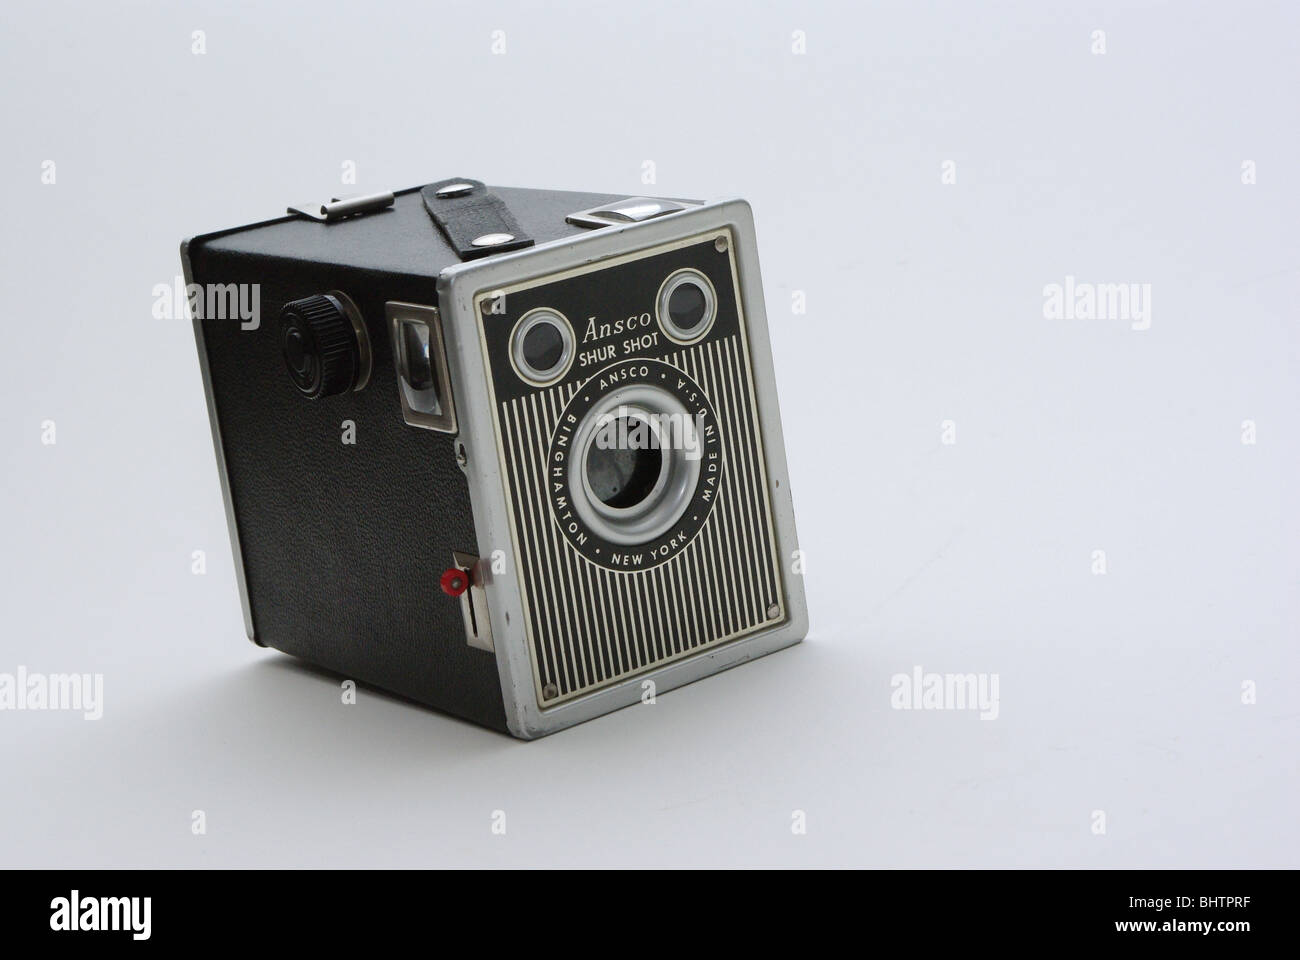 Vintage film Brownie - Typ-Kamera von Agfa Ansco hur Shot" für 120 Rollen Film Stockfoto